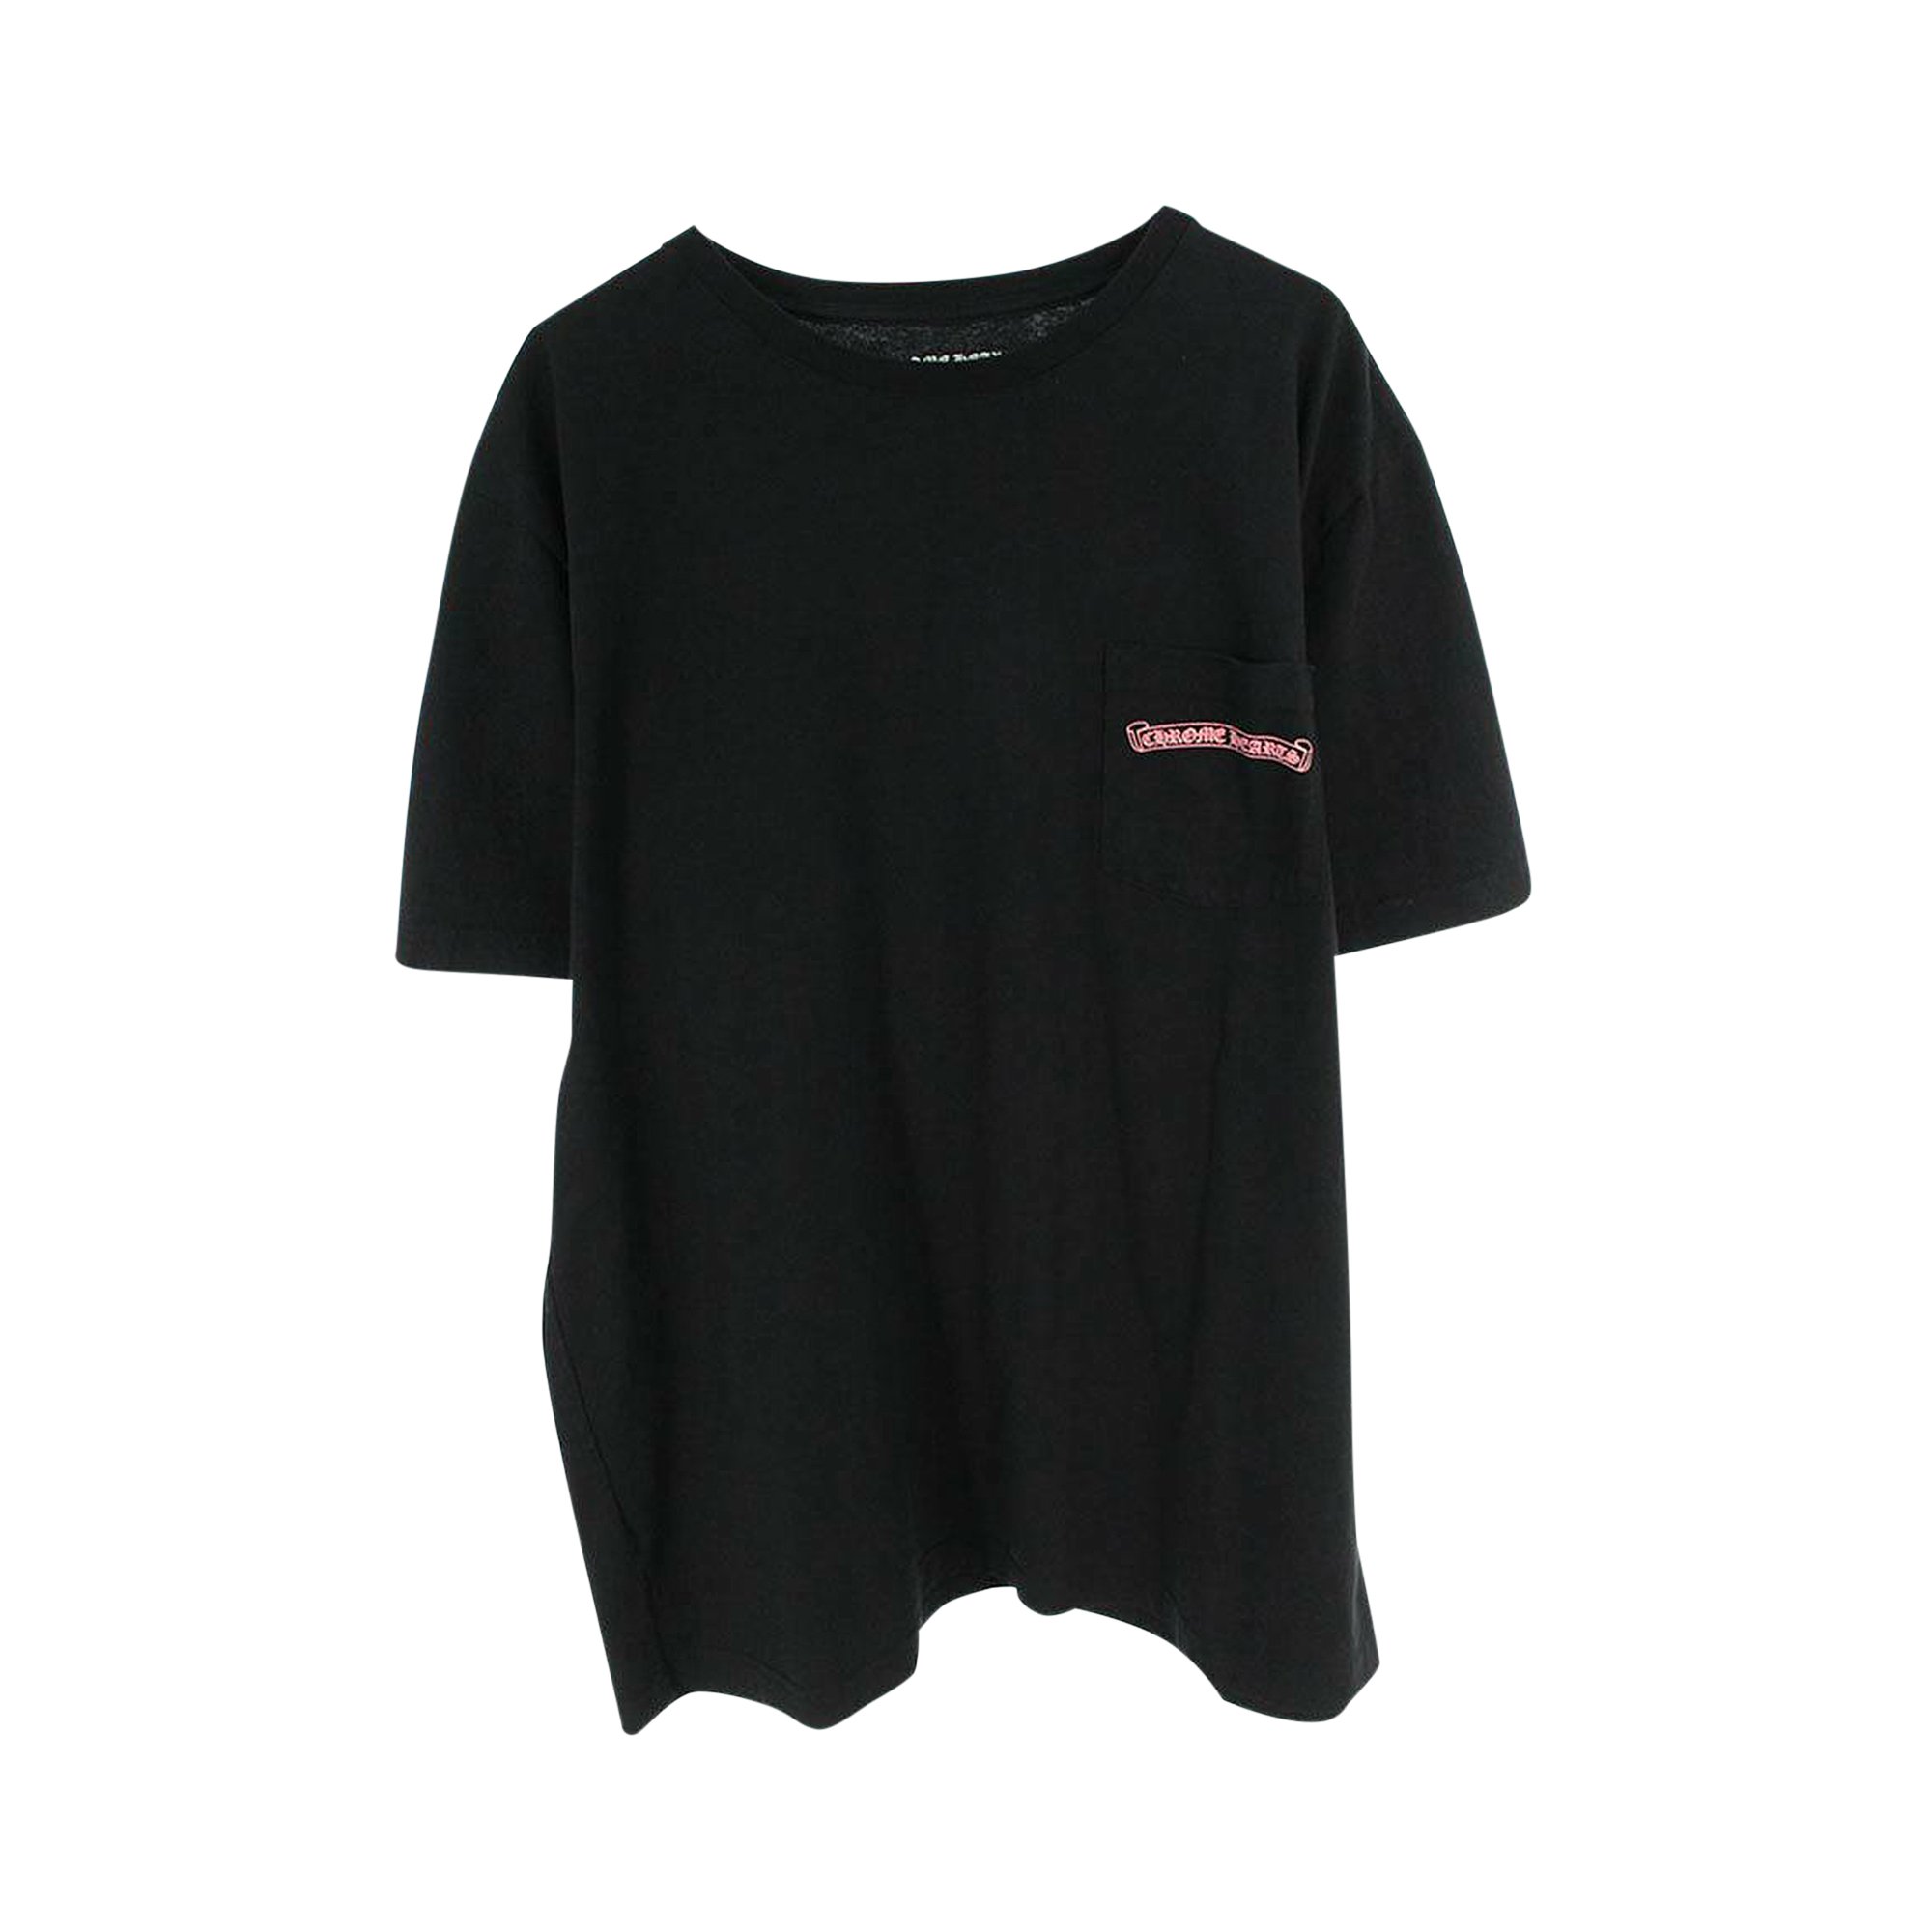 Chrome Hearts x Matty Boy 99 Eyez T-Shirt 'Black' | GOAT